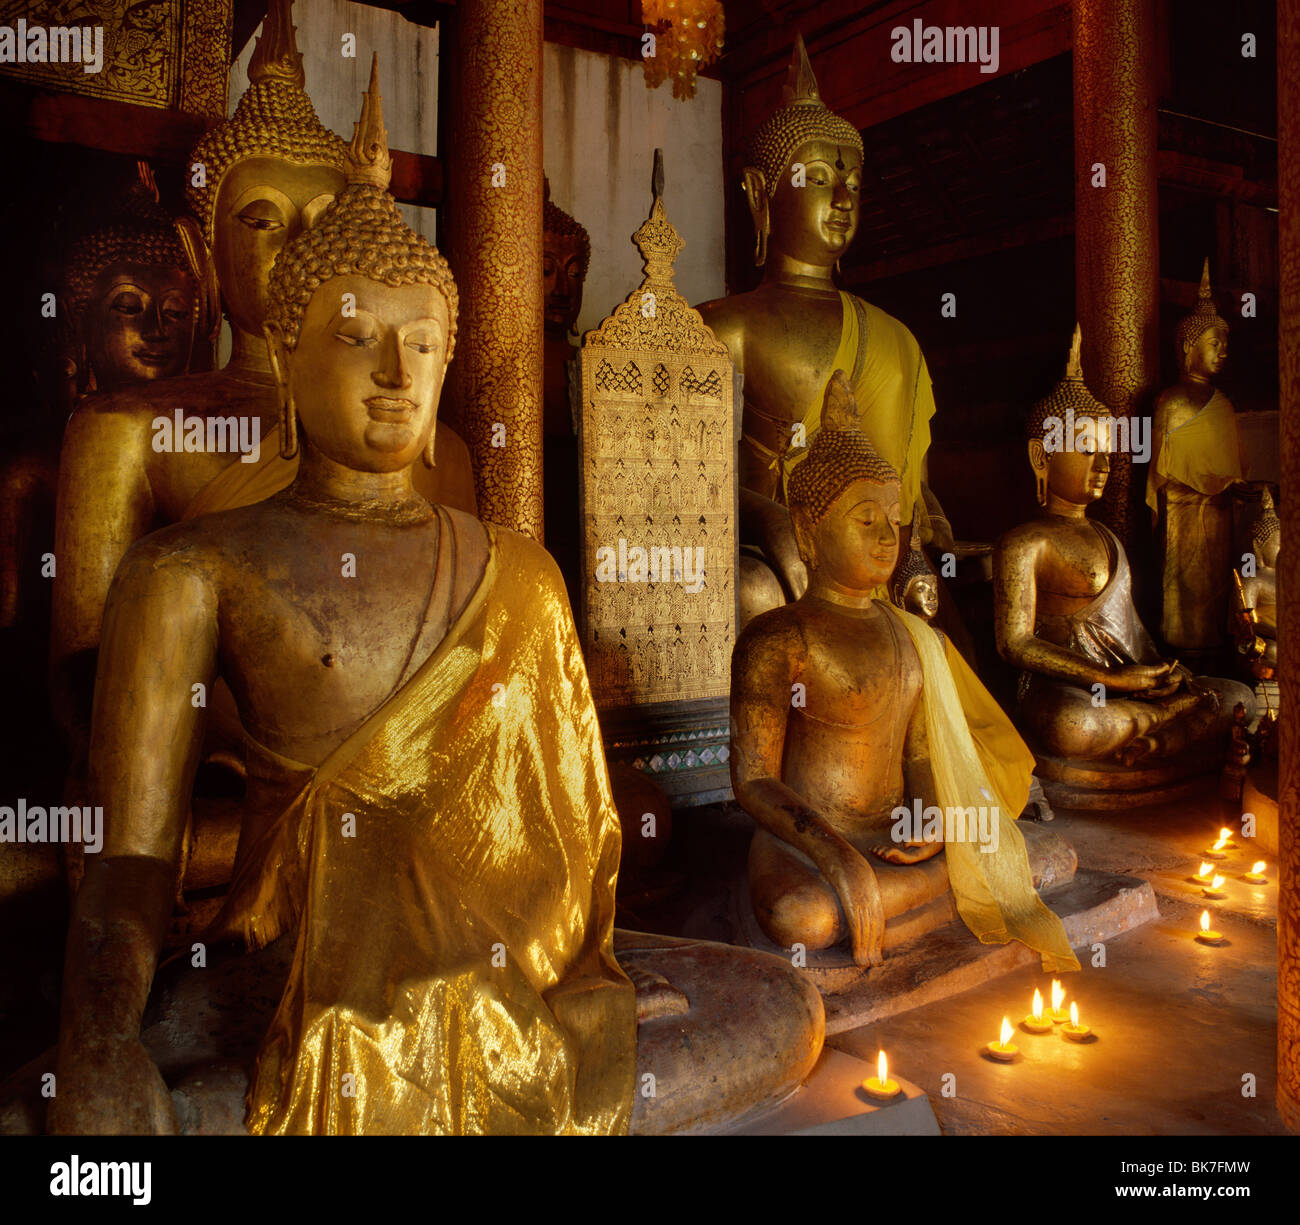 Raccolta del xv secolo immagini Lanna e inizio Ayutthaya immagini conservate presso il Wat Chiang Man, Chiang Mai, Thailandia Foto Stock